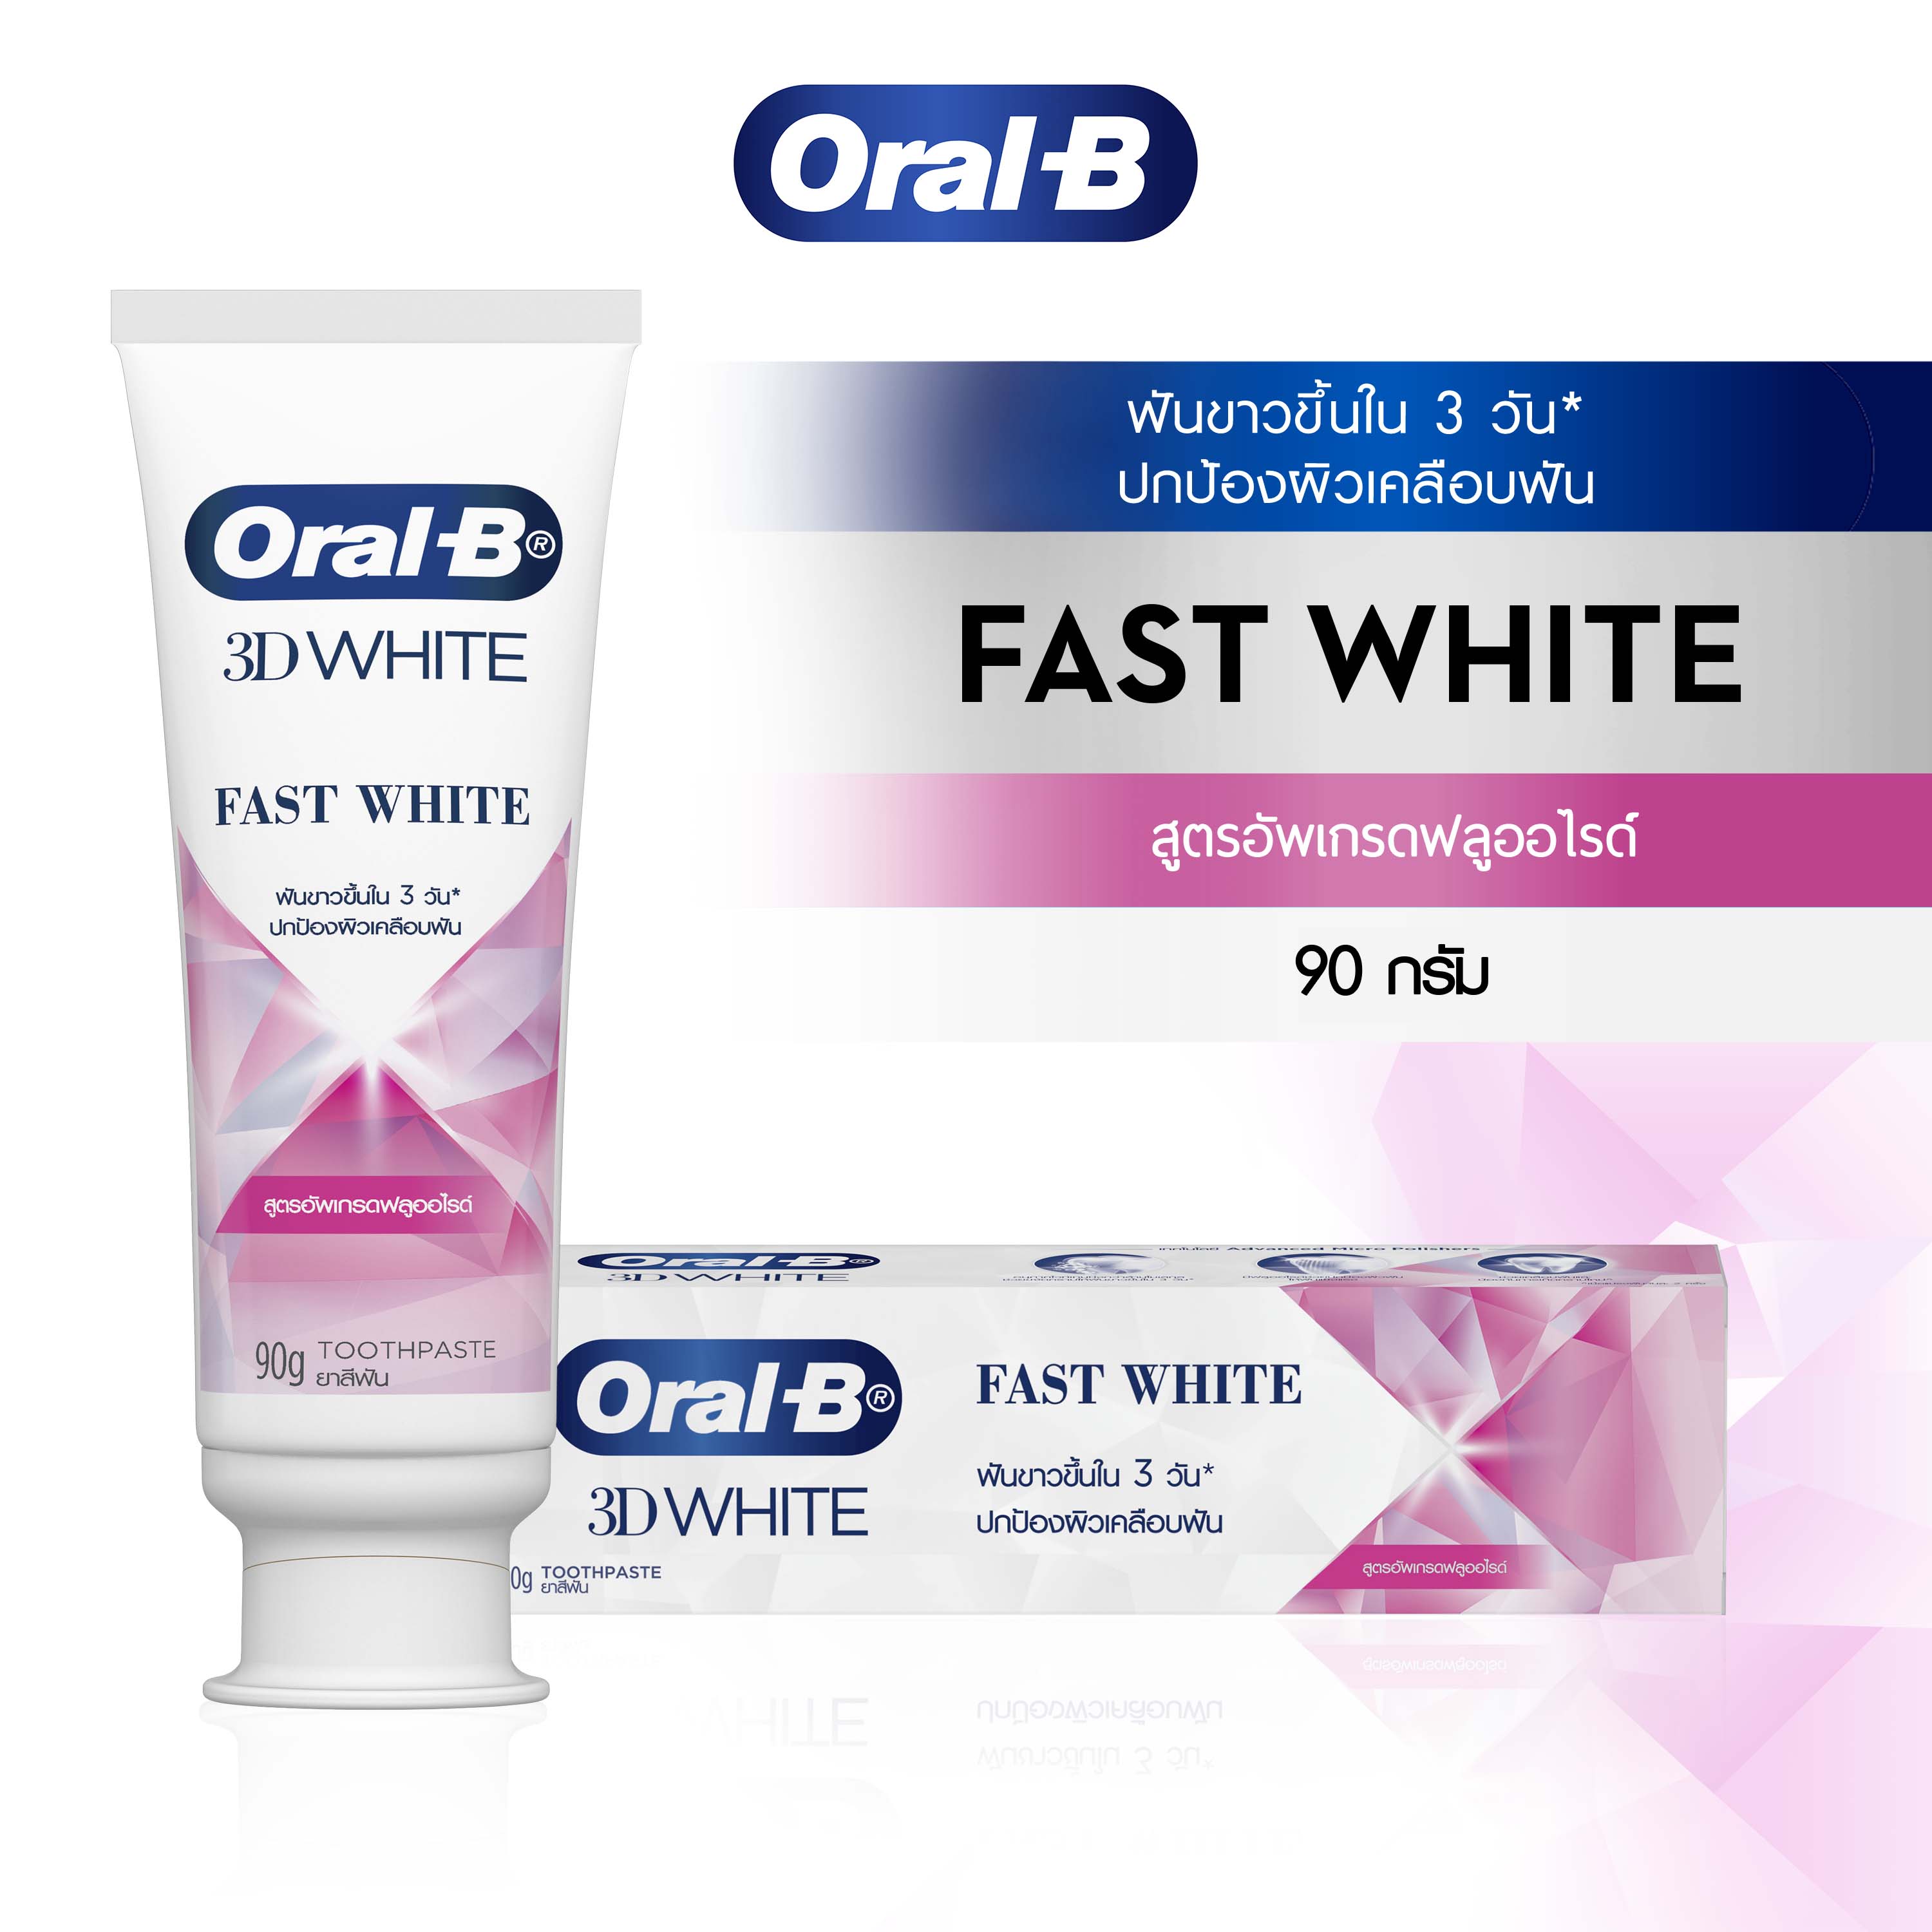 ออรัล-บี ทรีดีไวท์ ฟาสต์ไวท์ สูตรอัพเกรดฟลูออไรด์ ขนาด 90 กรัม | Oral-B 3DWhite Fast White Fortifying Mineral Toothpaste 90g